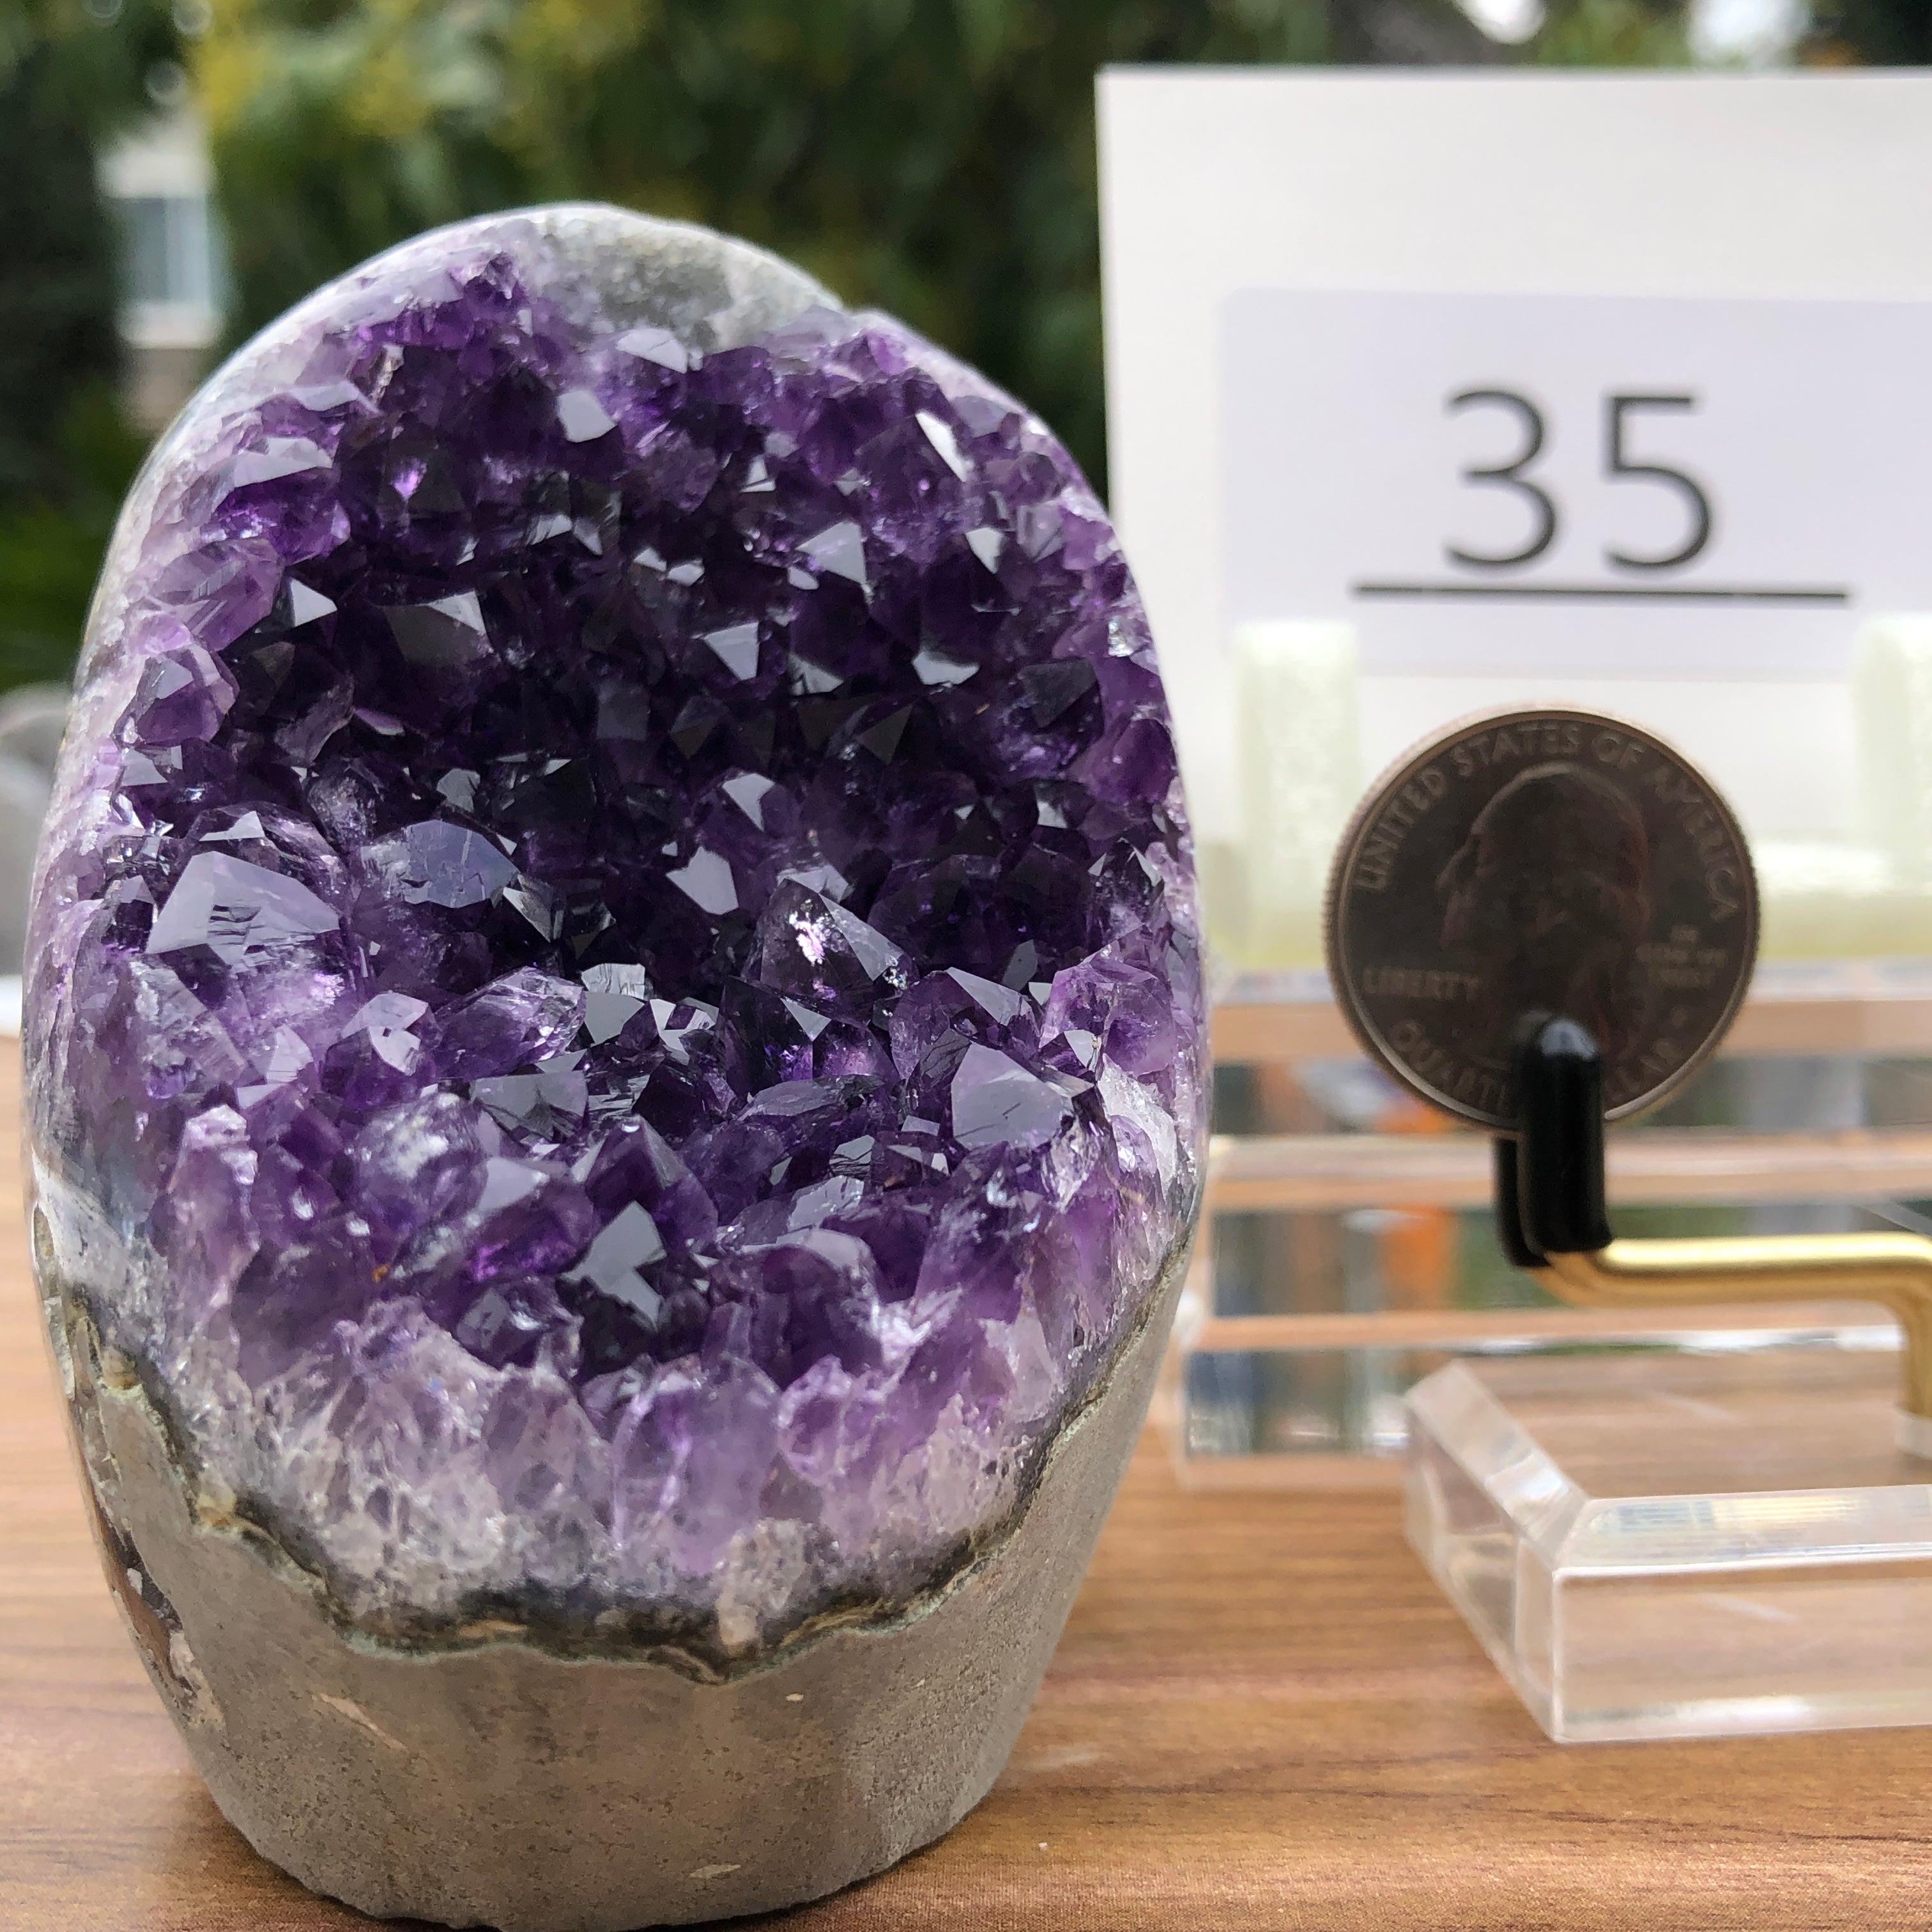 Purple Amethyst Geode  from Uruguay